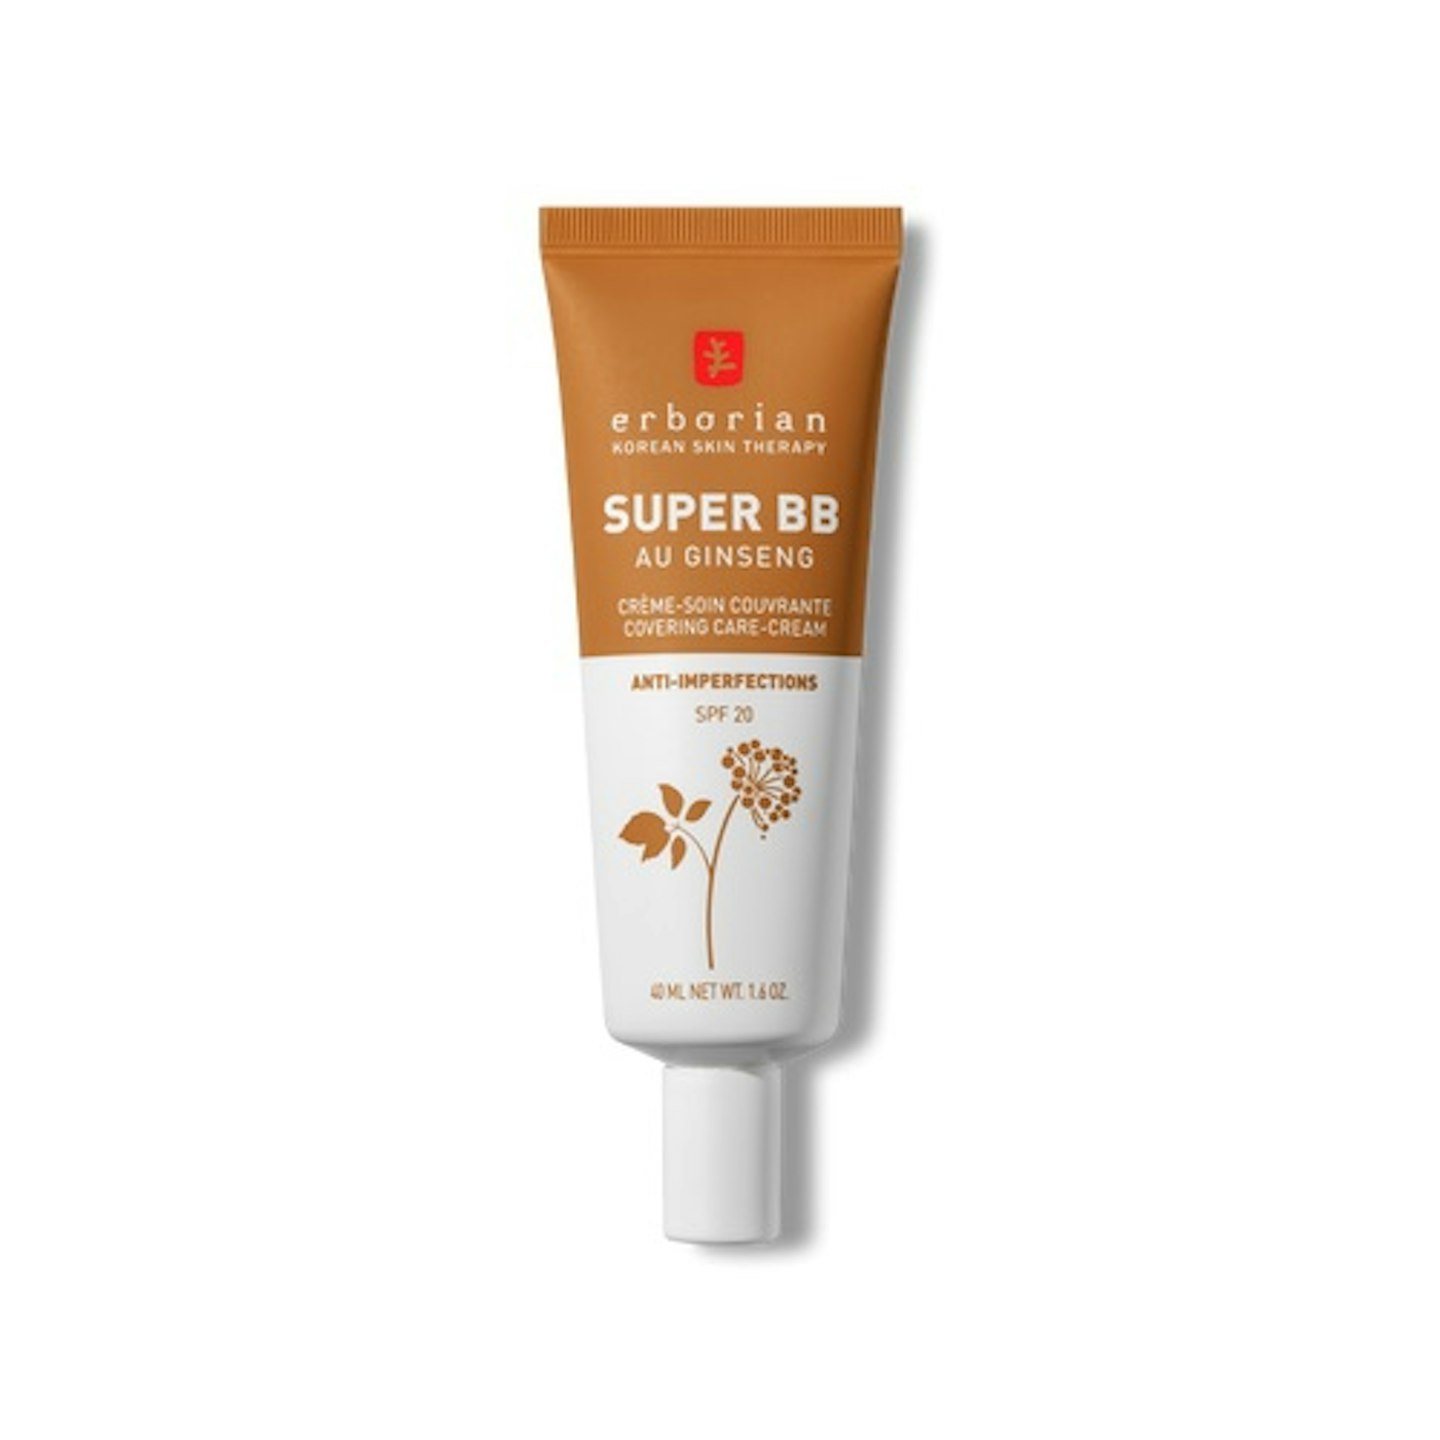 Erborian Super BB - Full Coverage BB Cream For Acne Prone Skin